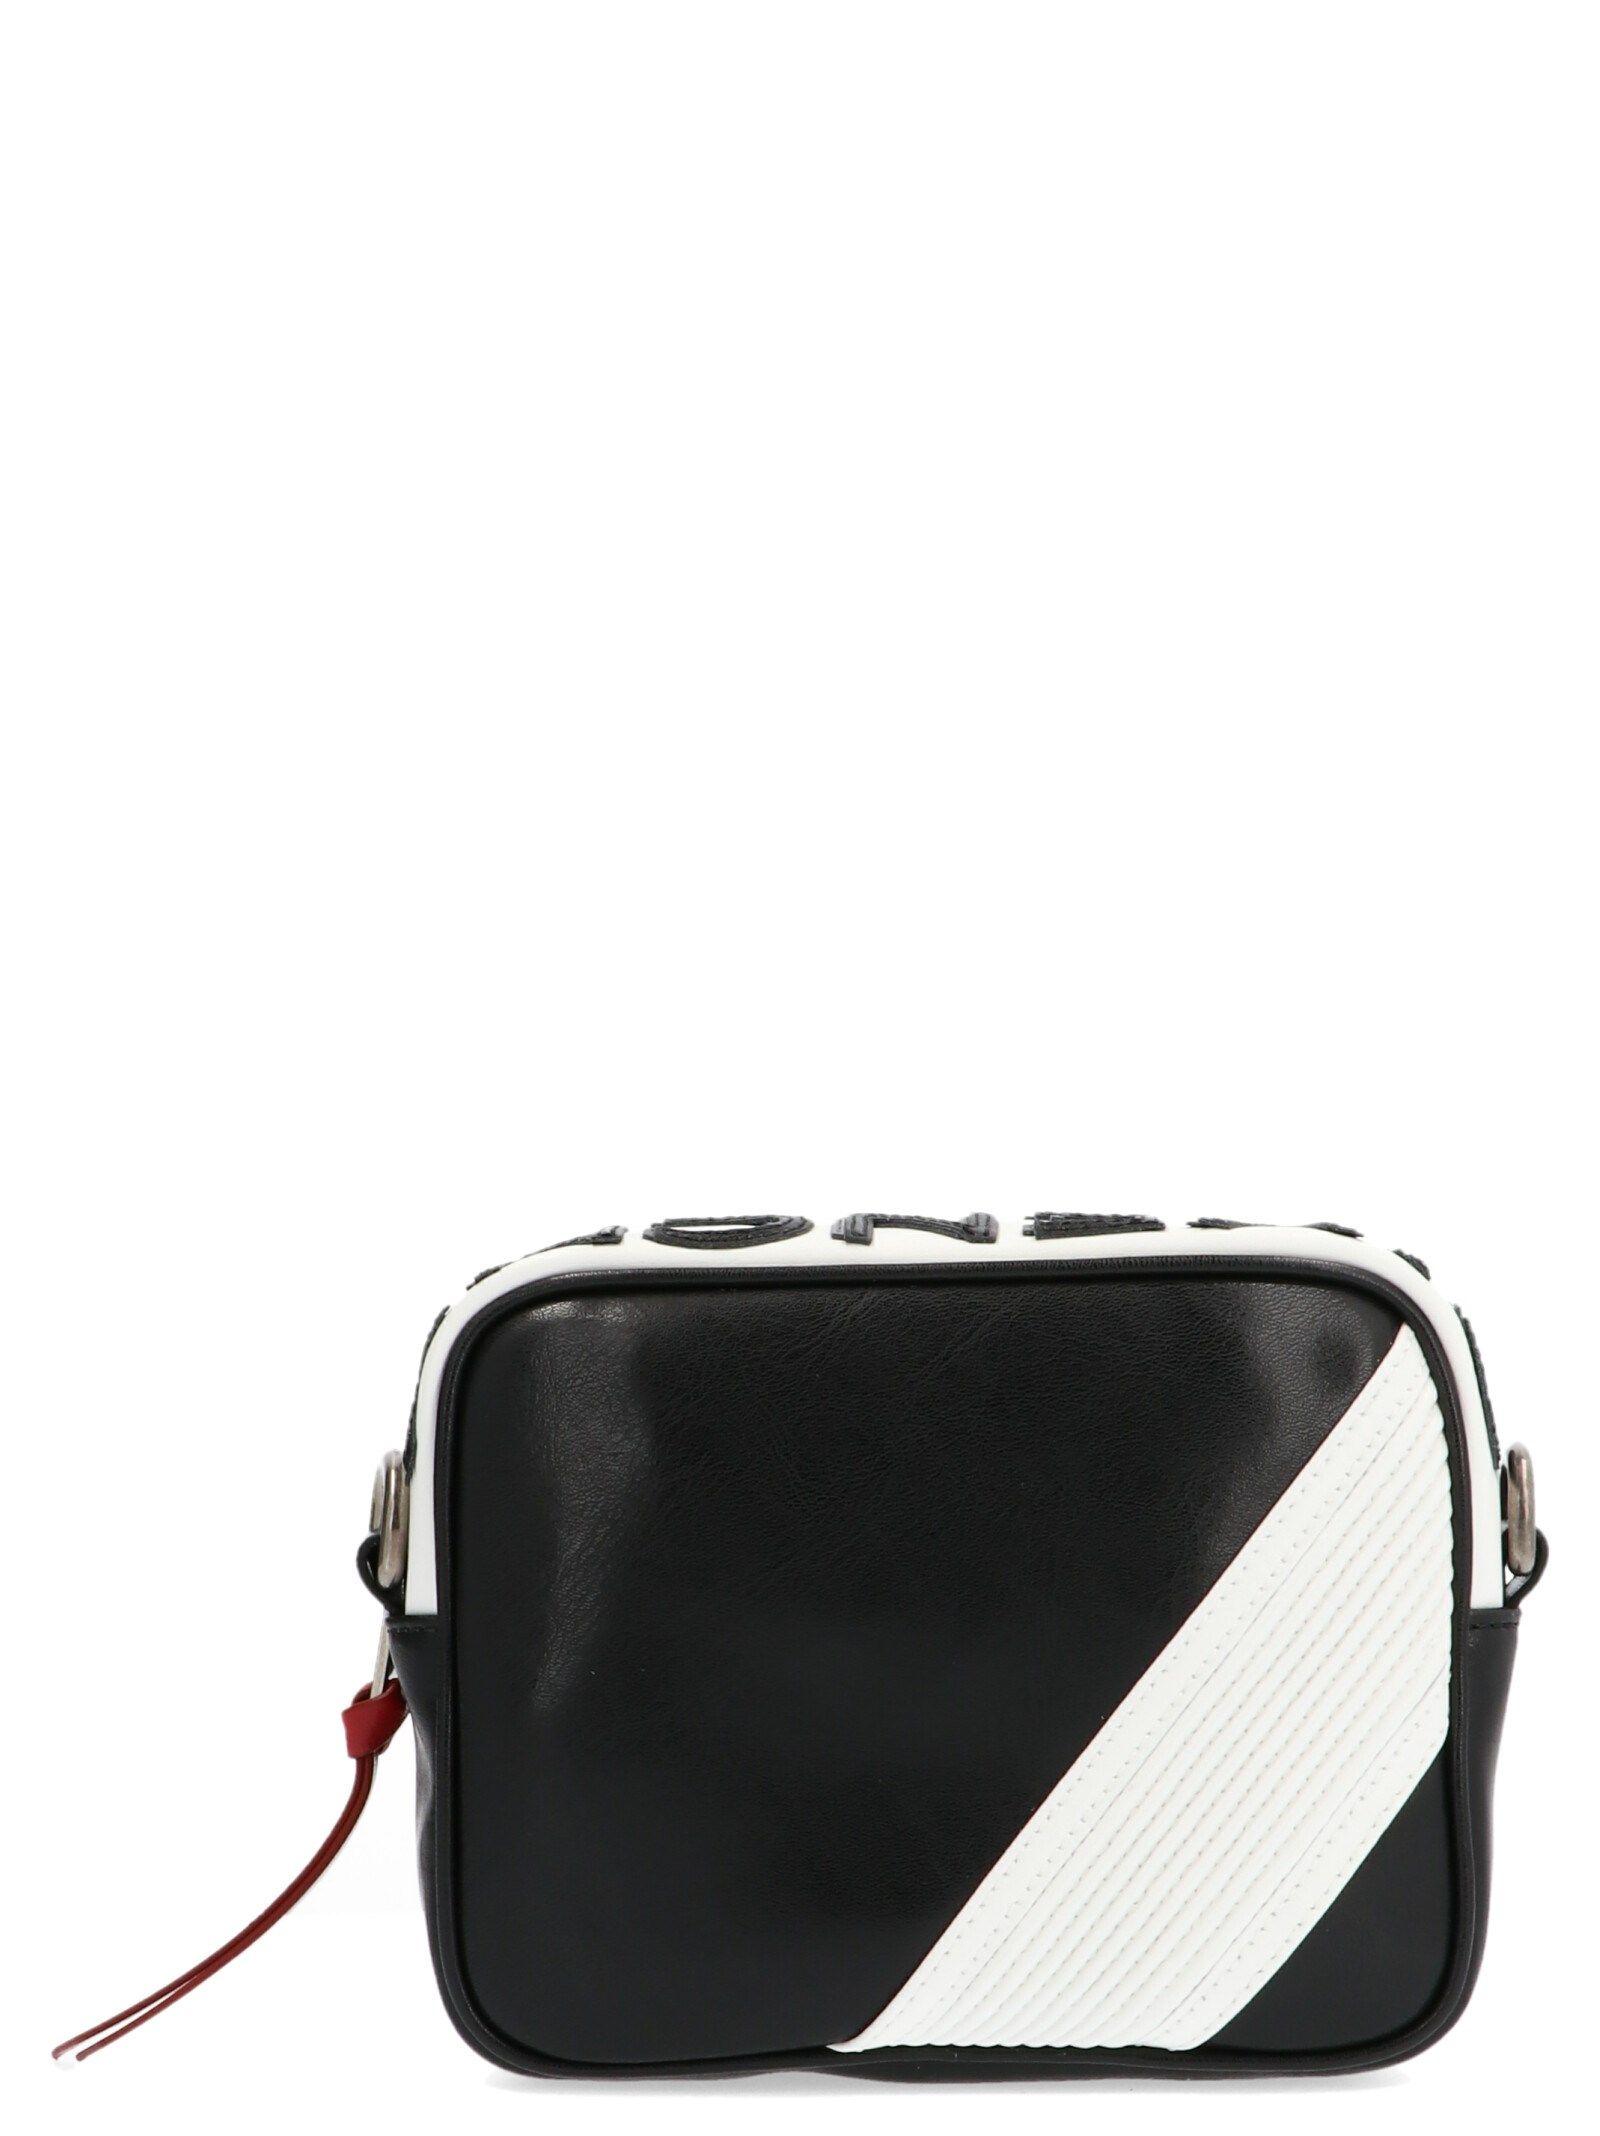 Givenchy Multicolor Leather Messenger Bag in Black for Men - Lyst